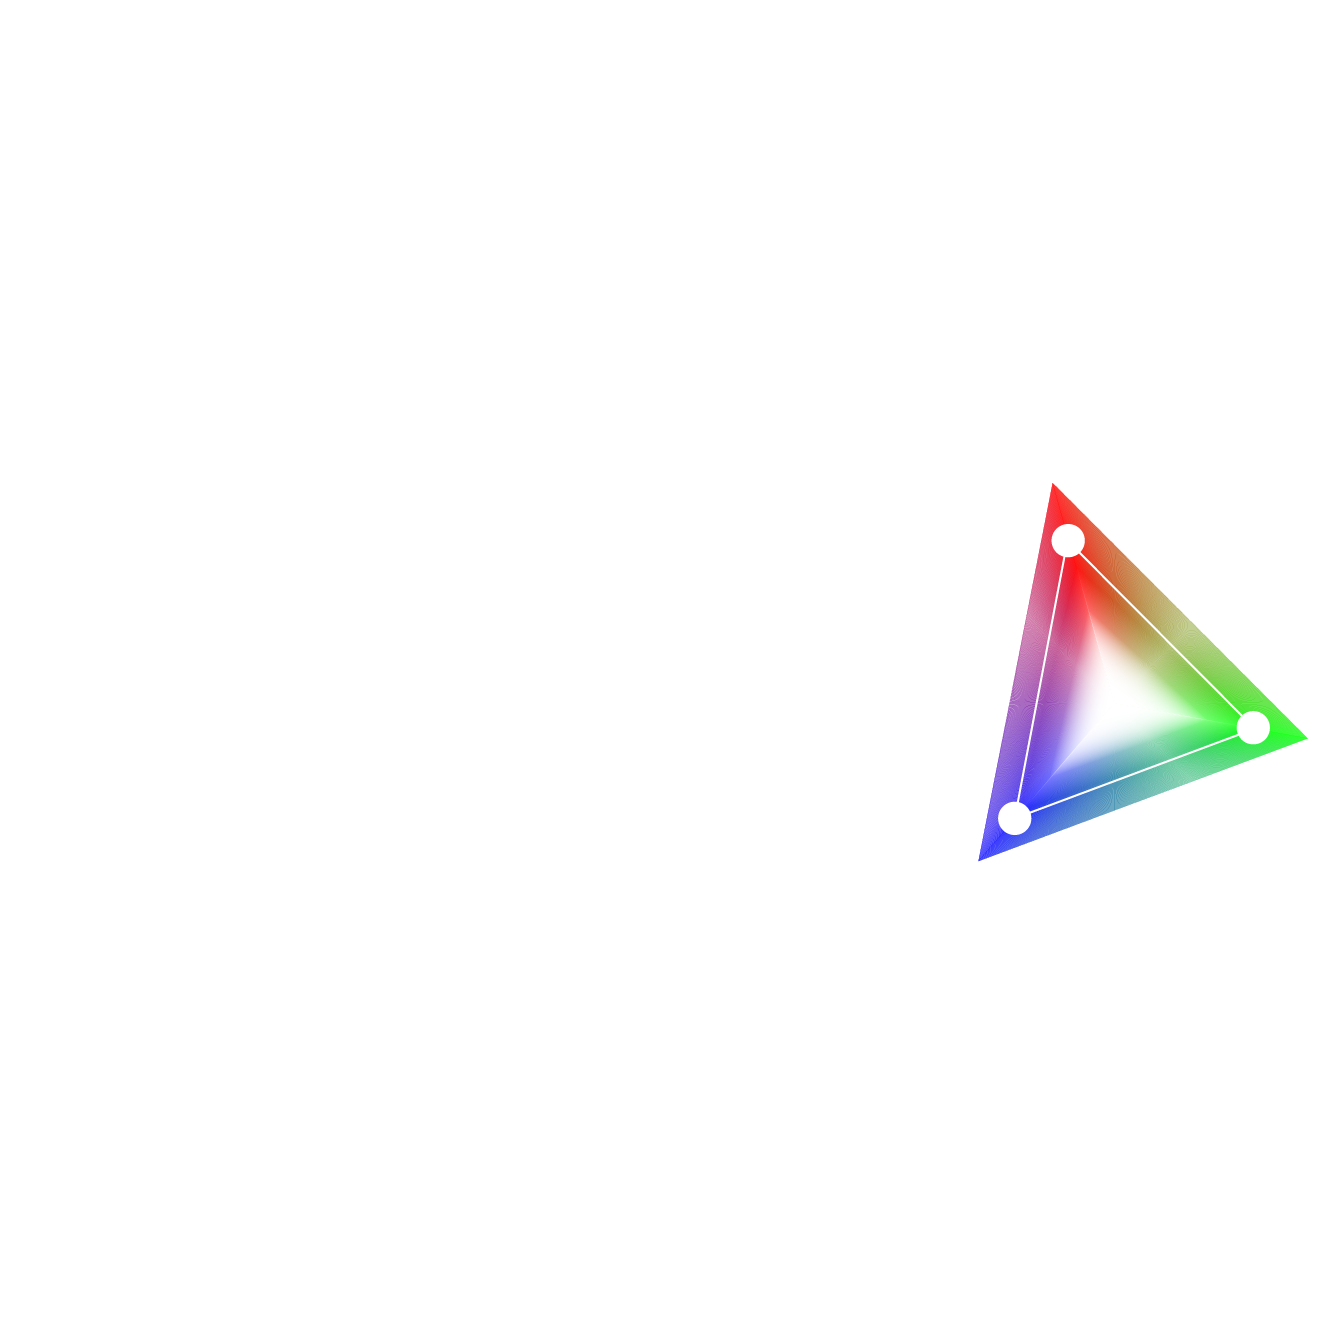 90% DCI-P3 125% sRGB